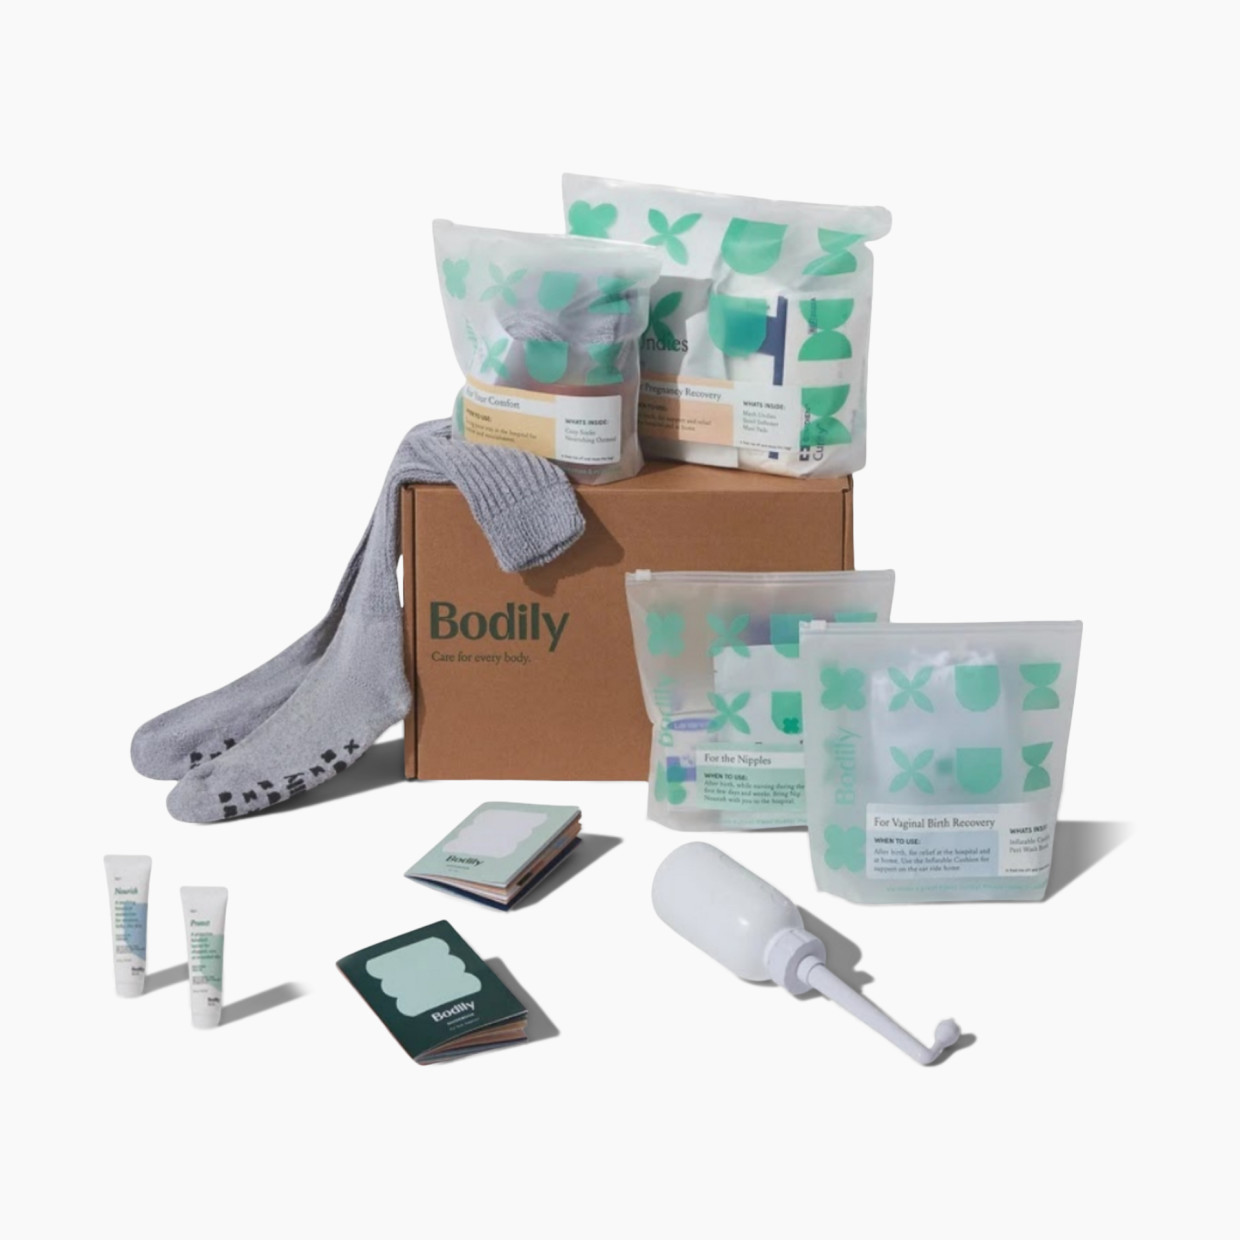 Bodily Care for Birth Box - Total Labor + Postpartum Prep Kit.